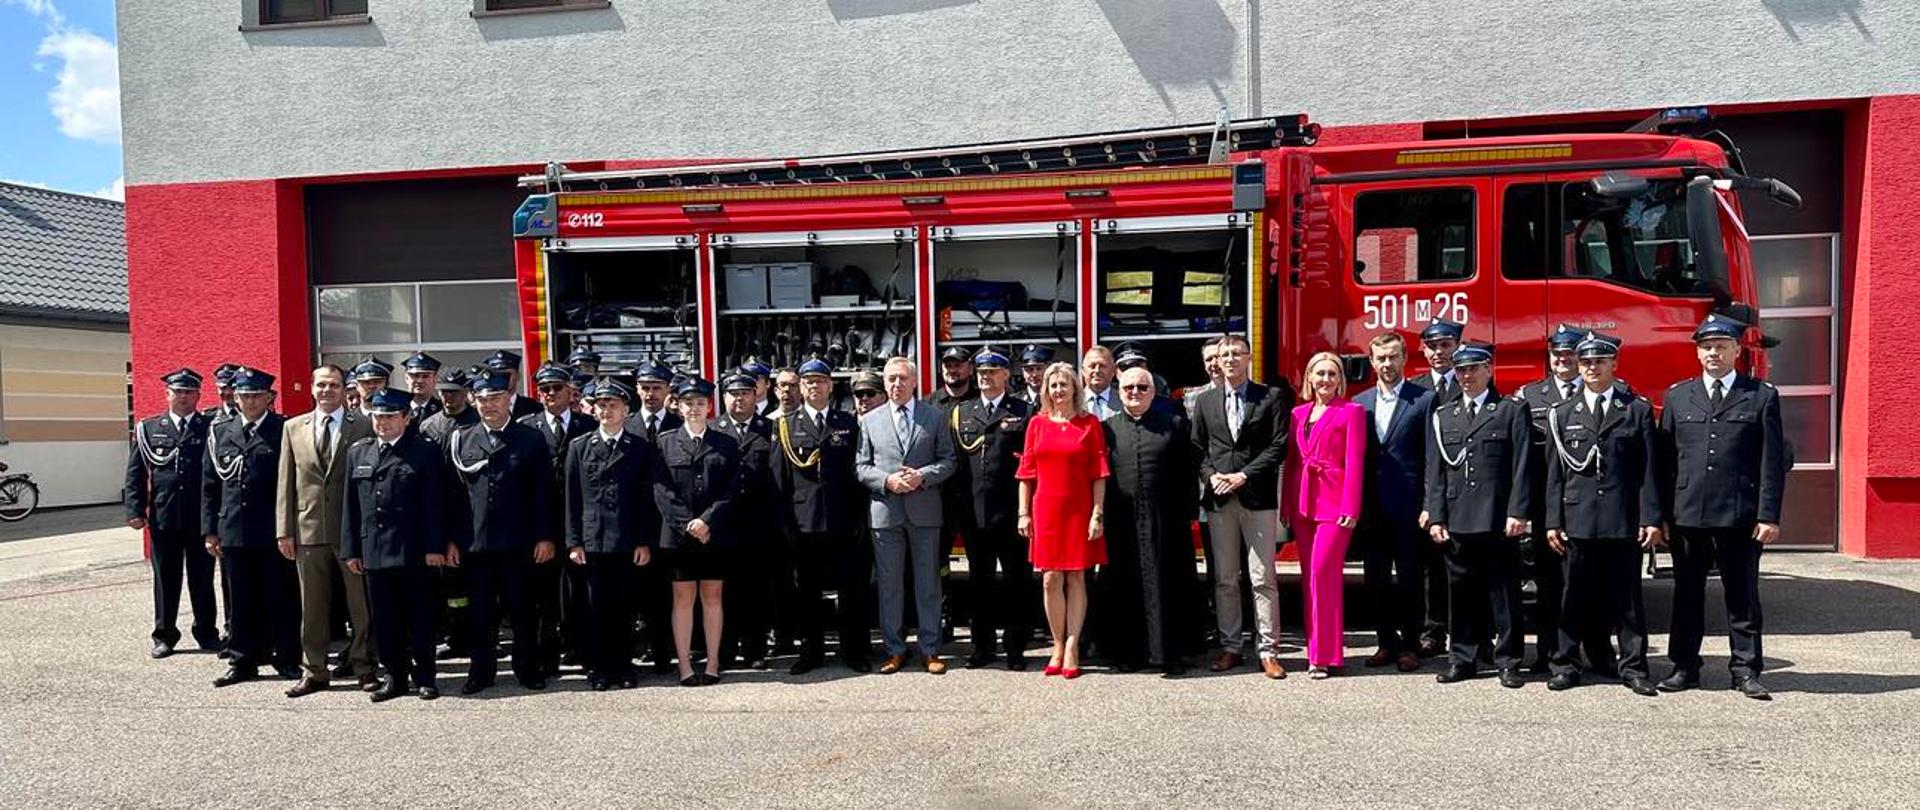 Zaproszeni goście oraz strażacy biorący udział w uroczystości stoją przed samochodem pożarniczym.